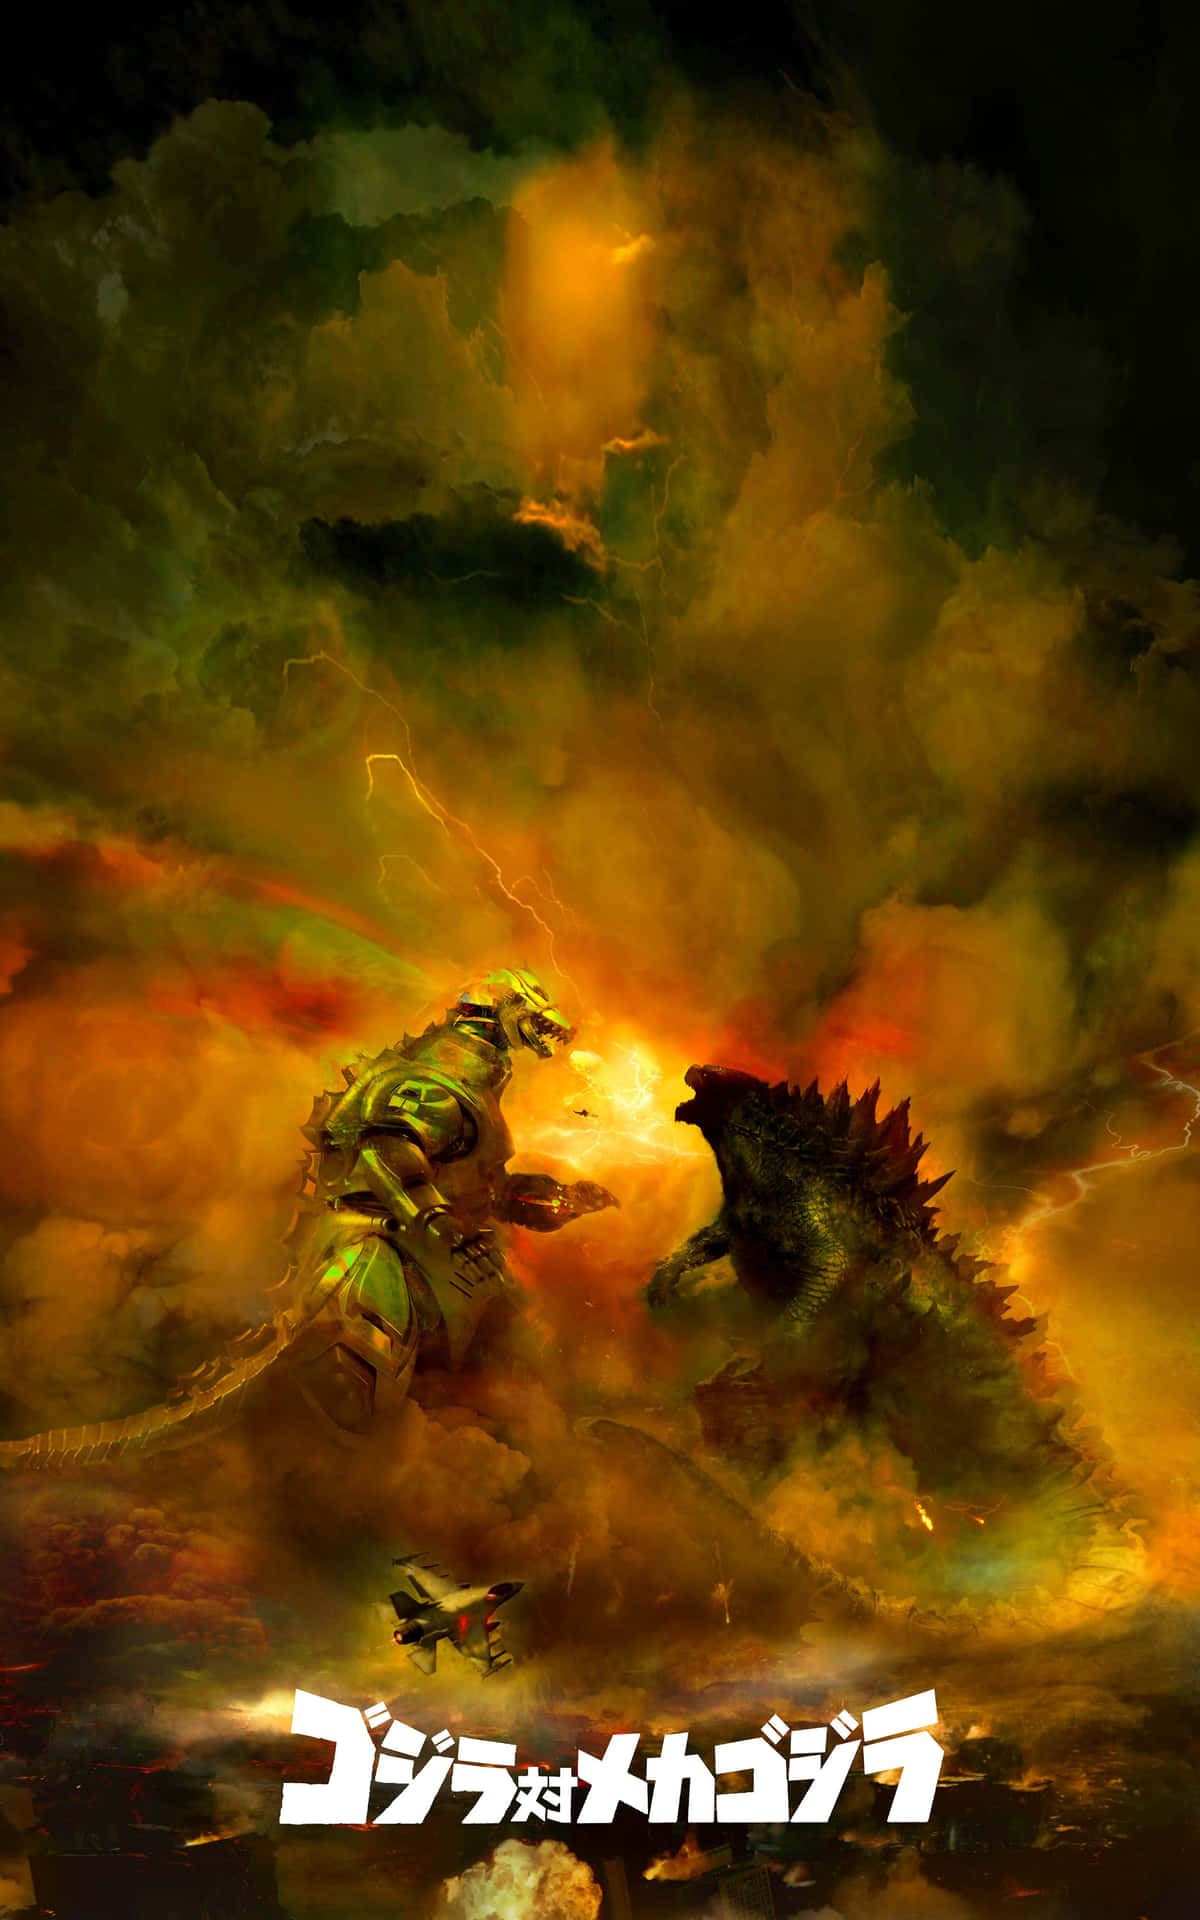 Caption: Epic Battle: Godzilla Vs Mechagodzilla Wallpaper